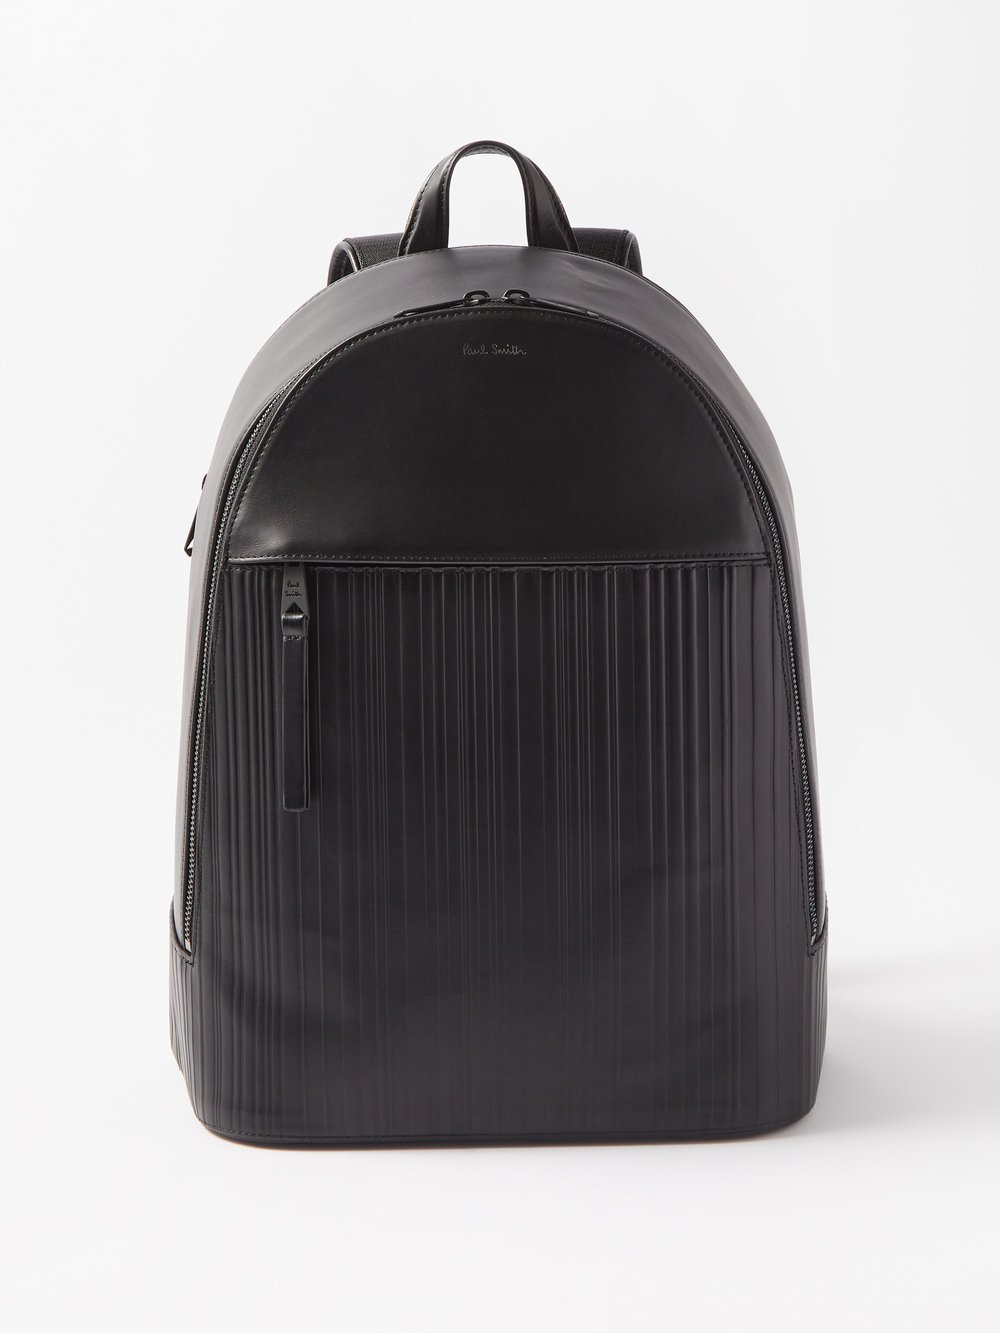 Кожаный рюкзак с тиснением signature stripe Paul Smith, черный комплект из семи боксеров с фирменными полосками paul smith